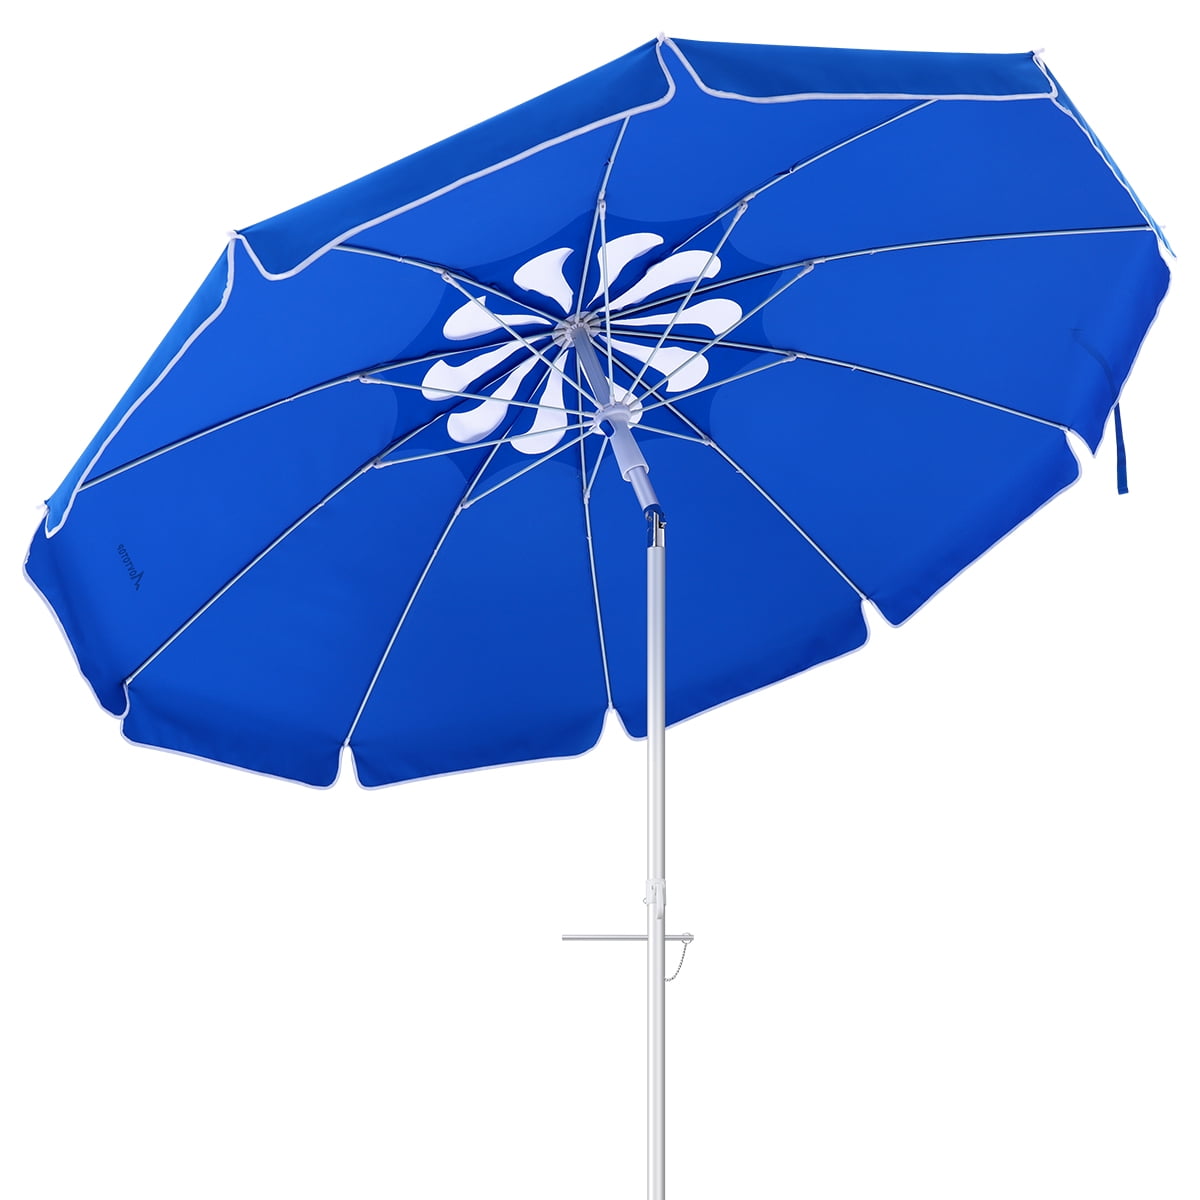 Пляжный зонт MOVTOTOP. Купить пляжный зонт MOVTOTOP. Зонтик 6 букв